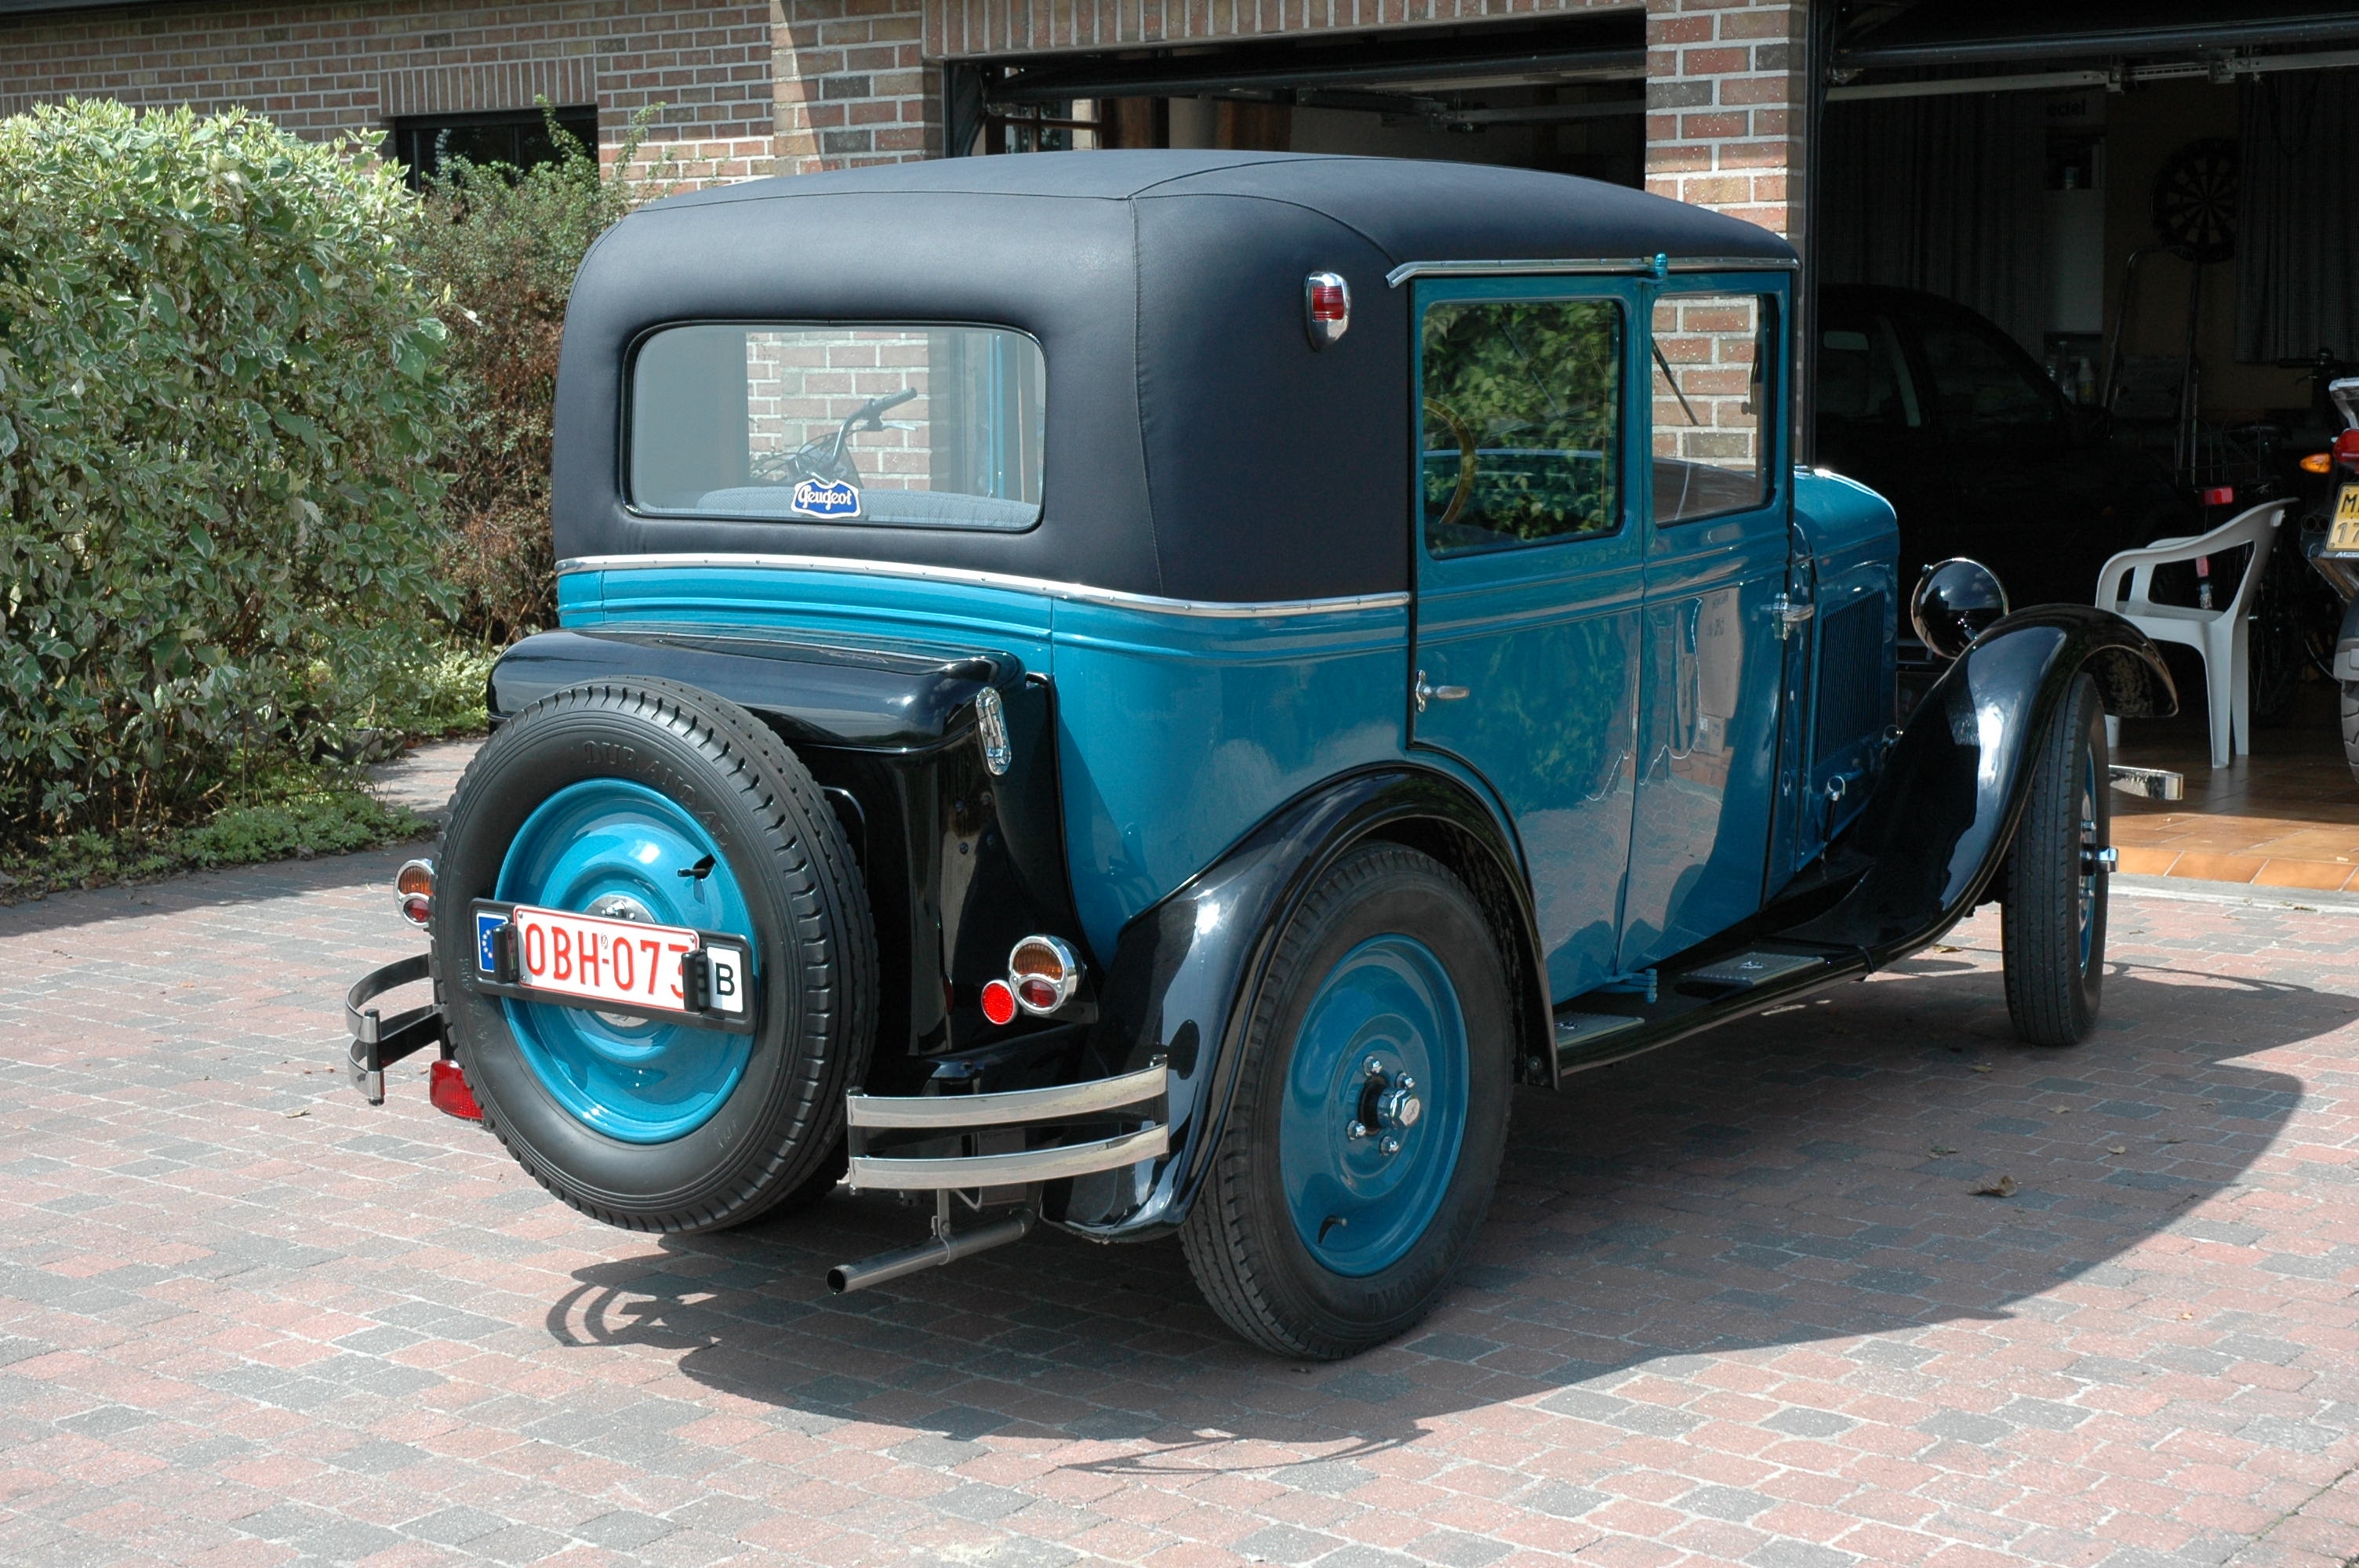 1930 Peugeot 201 oldtimer te koop